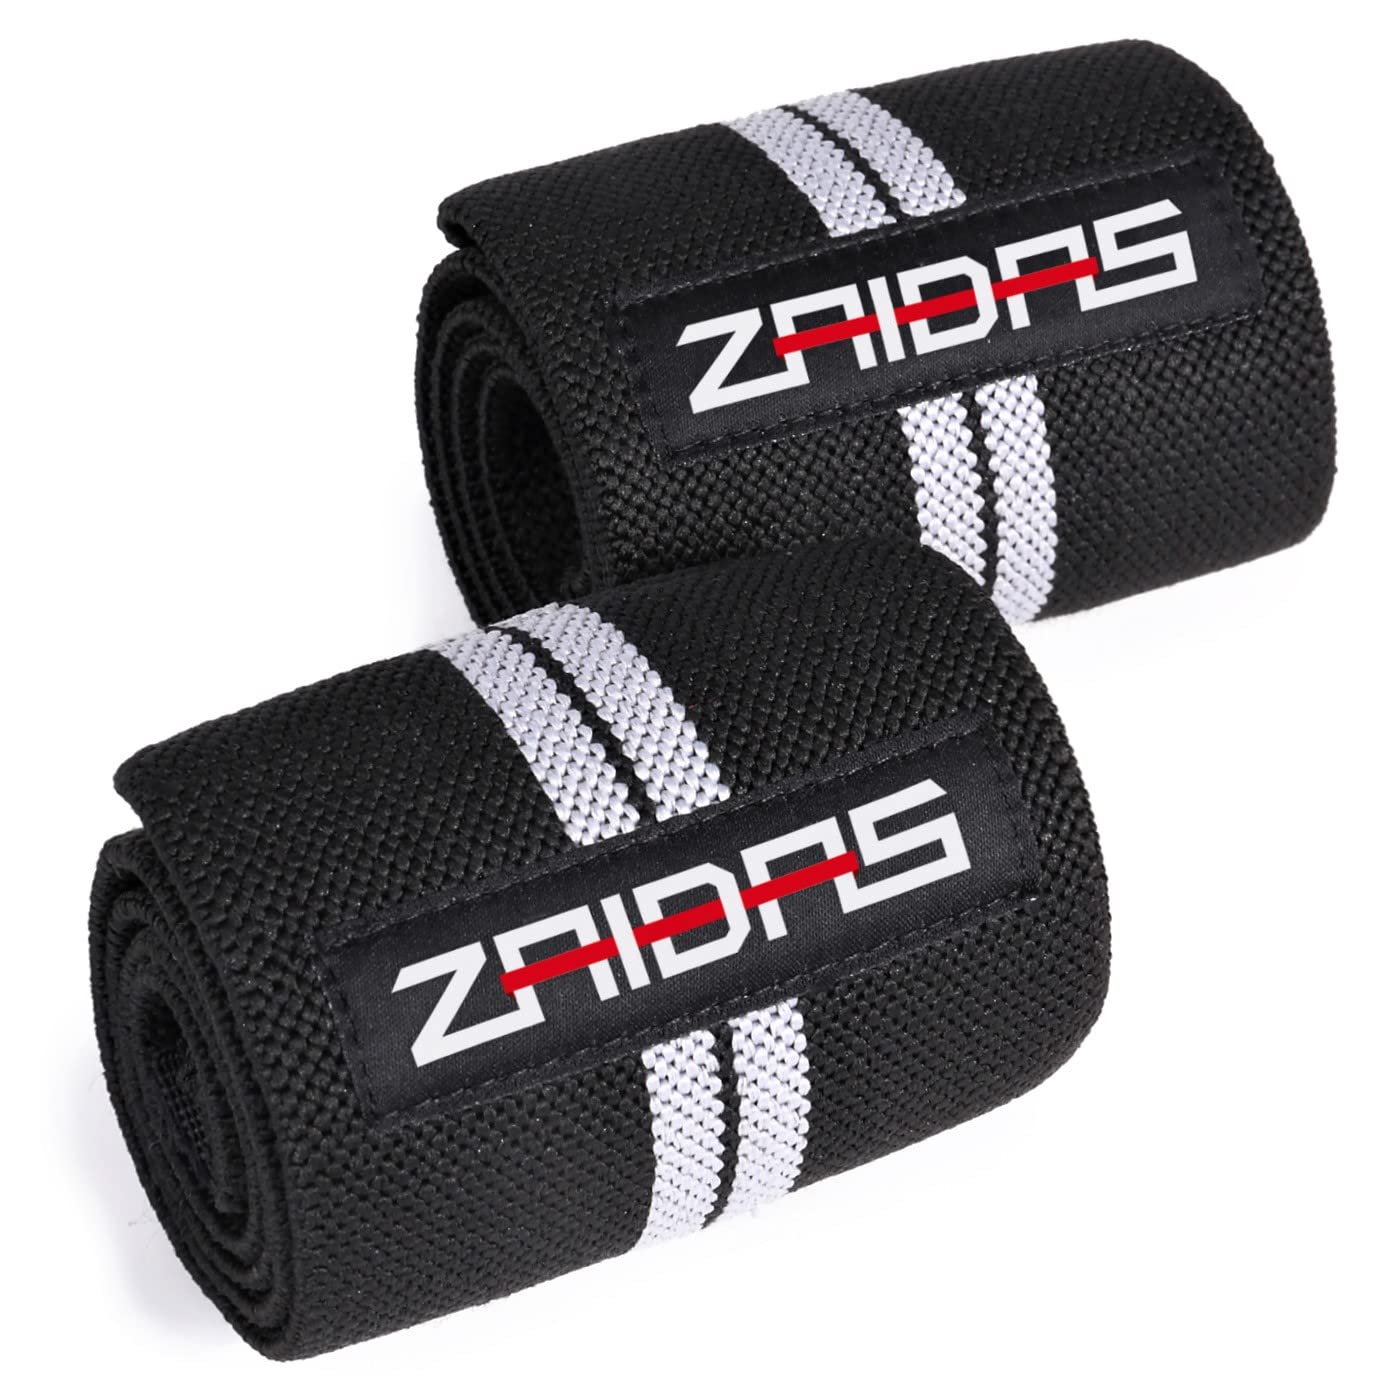 ZAIDAS (ザイダス) リストラップ 60cm ウェイトトレーニング 筋トレ 手首サポーター 手首固定 ブラック/グレー